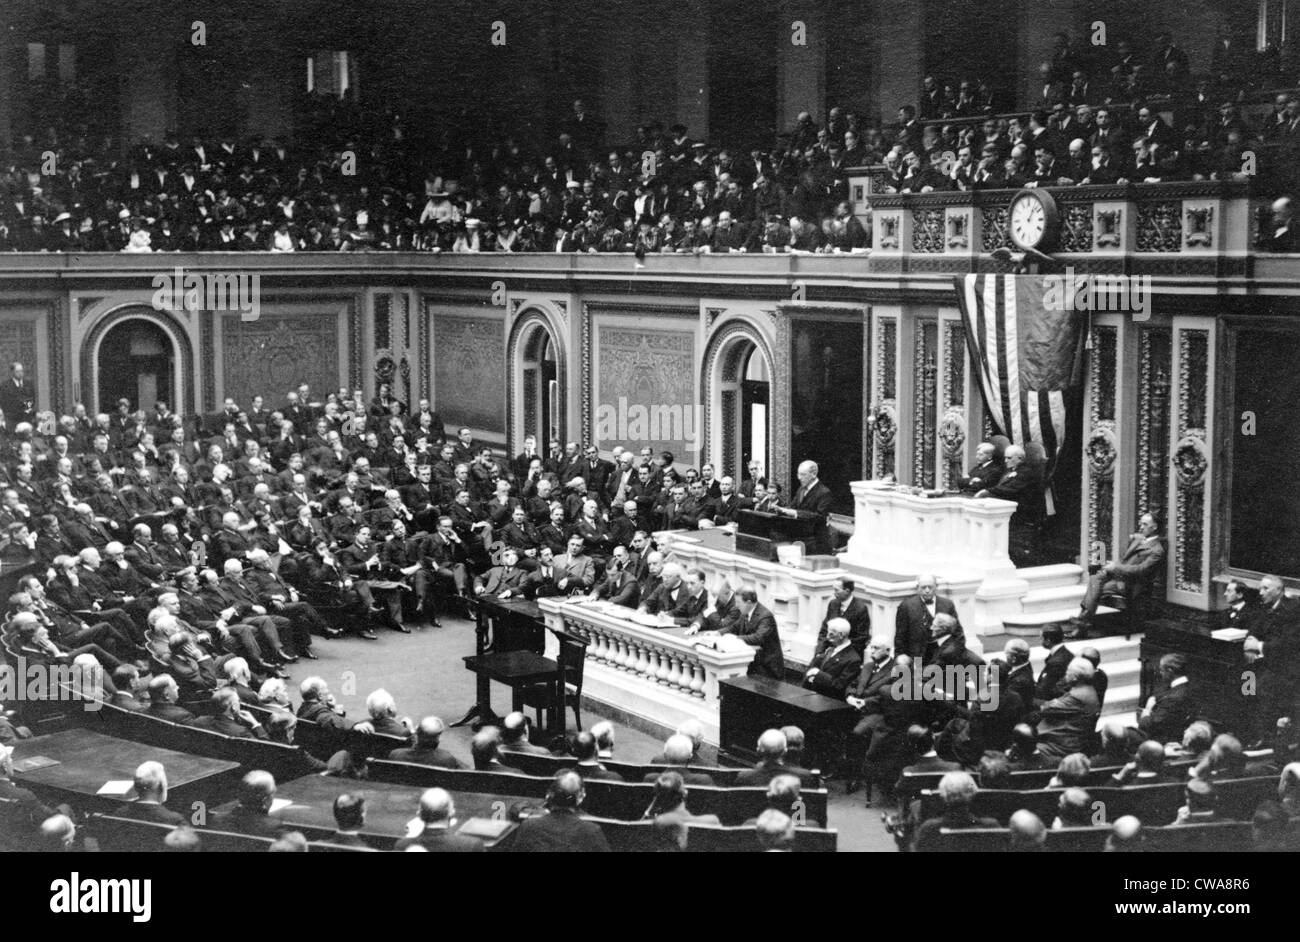 Woodrow Wilson (1856-1924) Adressierung Kongress im Jahre 1917, im Jahr des 1. Weltkrieges der Vereinigten Staaten Eintritt. Stockfoto